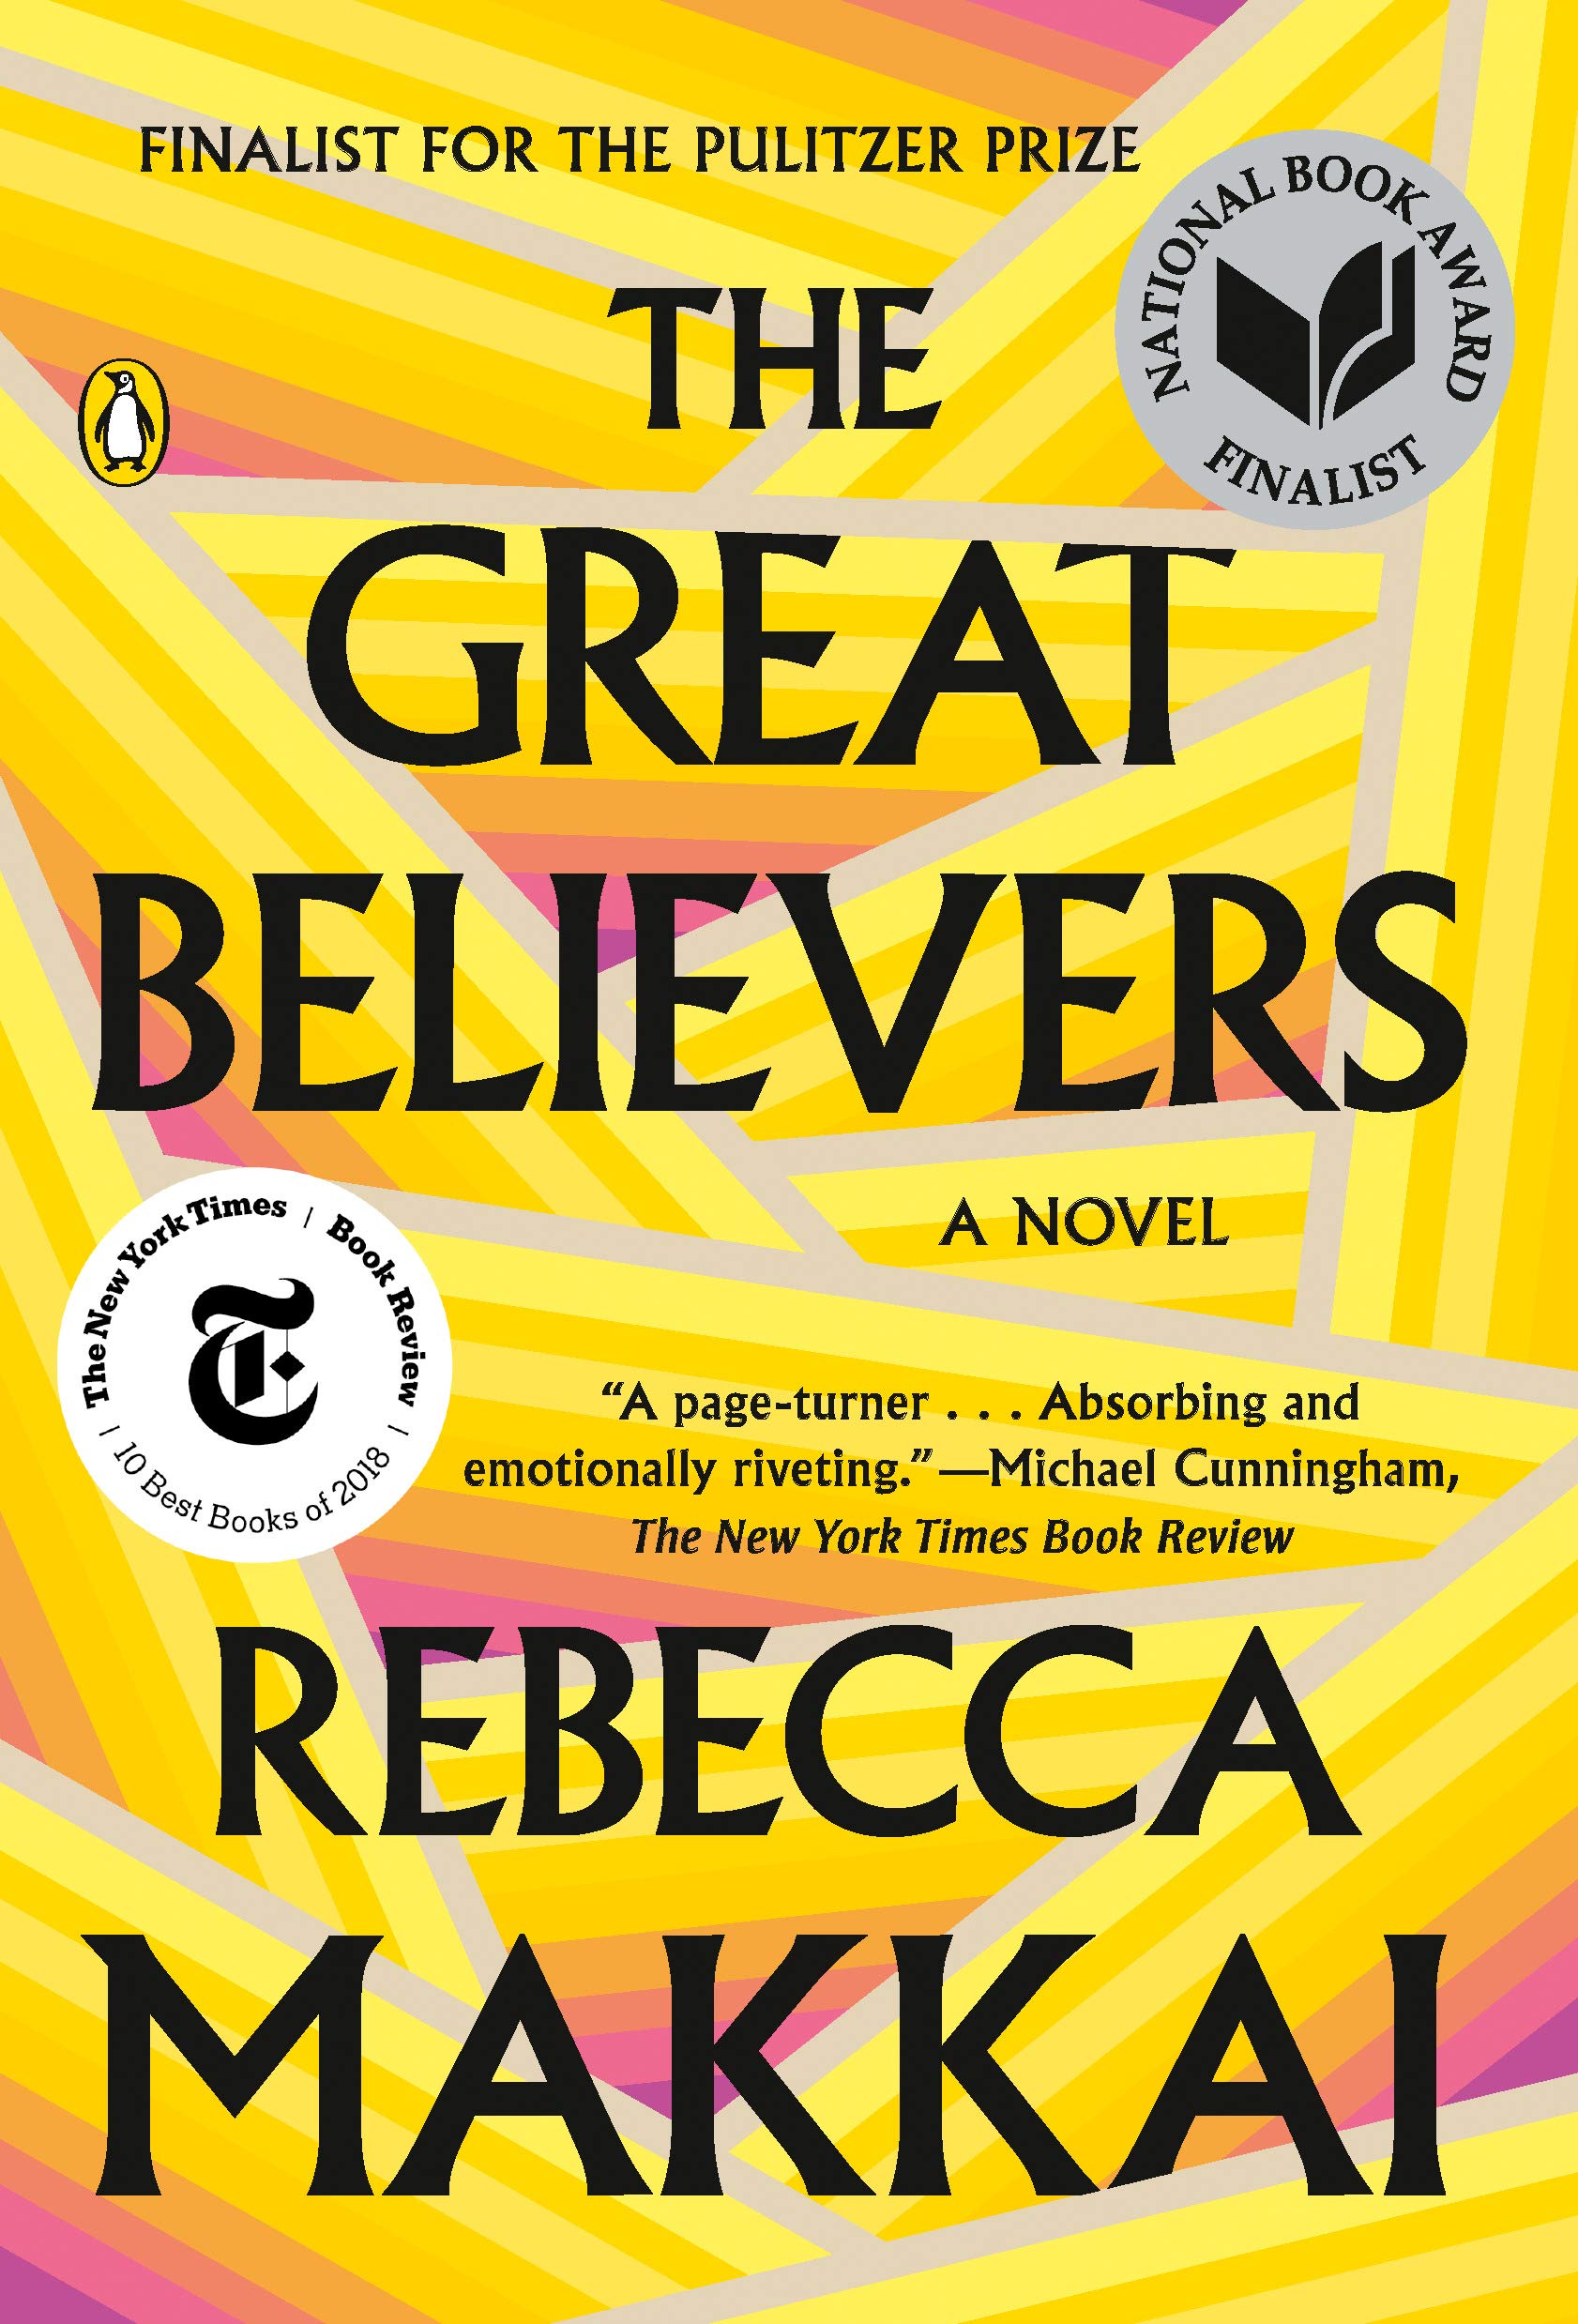 The Great Believers (eBook) by Rebecca Makkai $1.99